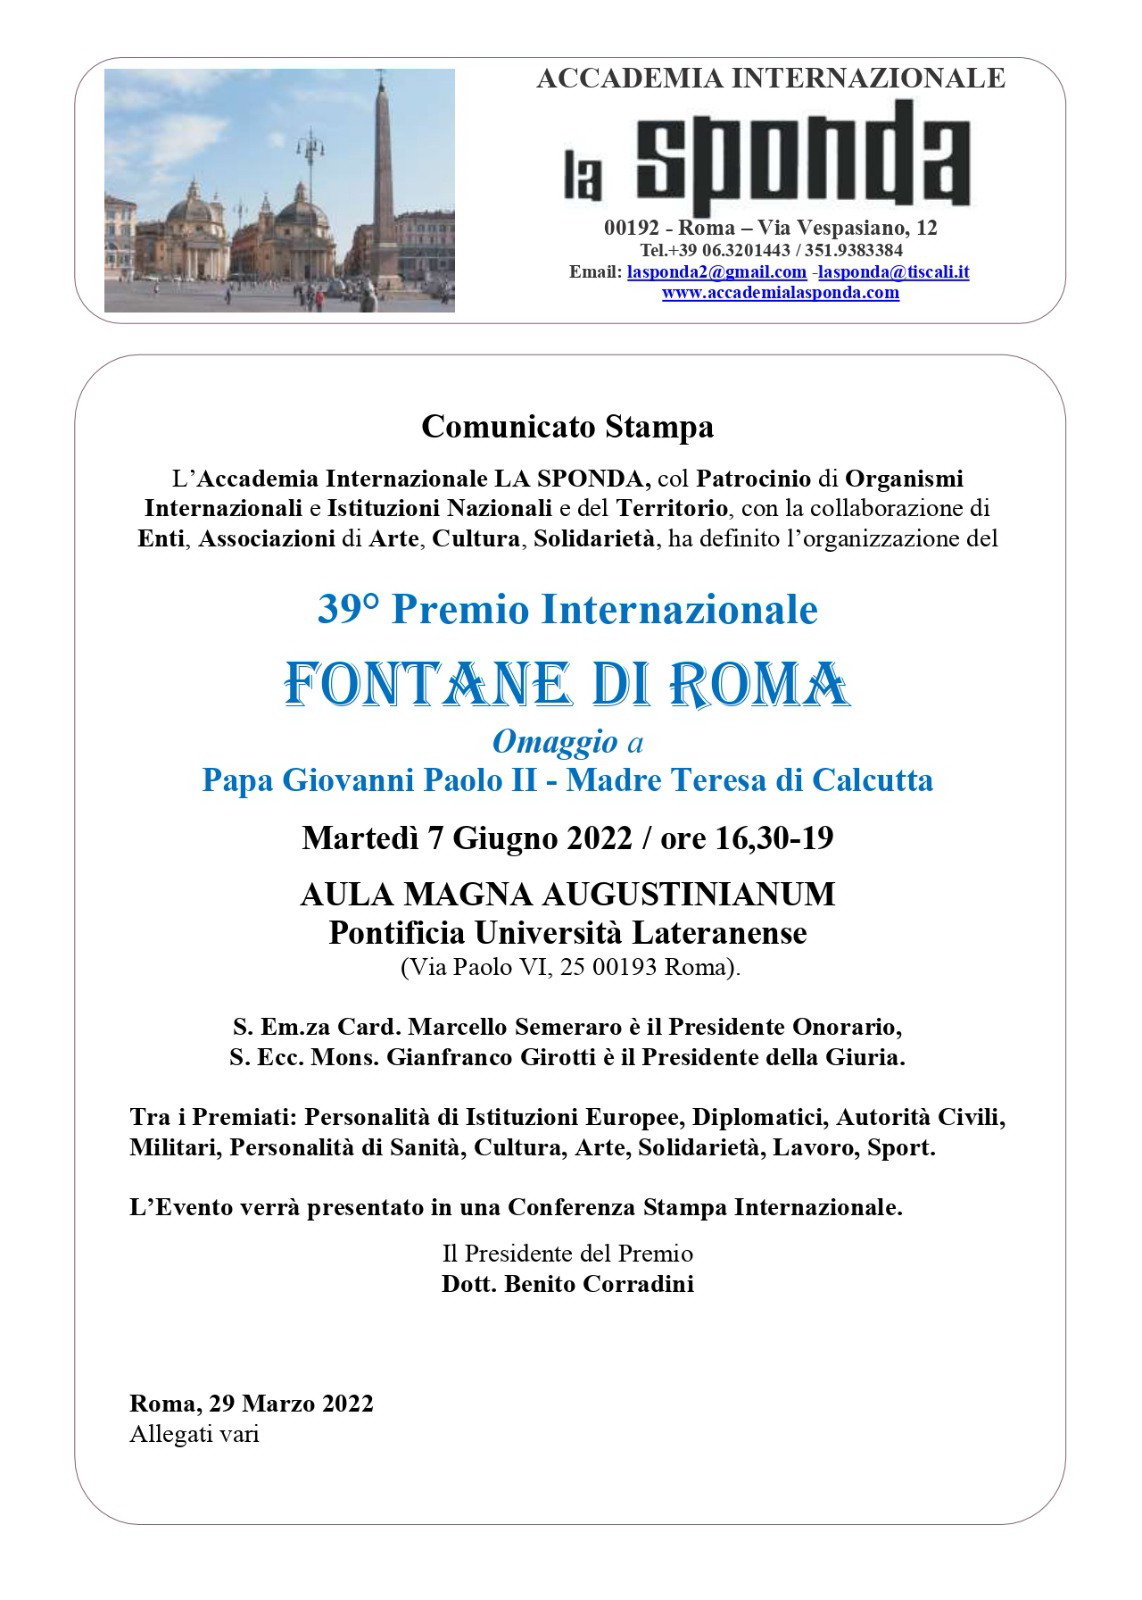 39° Premio Internazionale "Fontane di Roma"